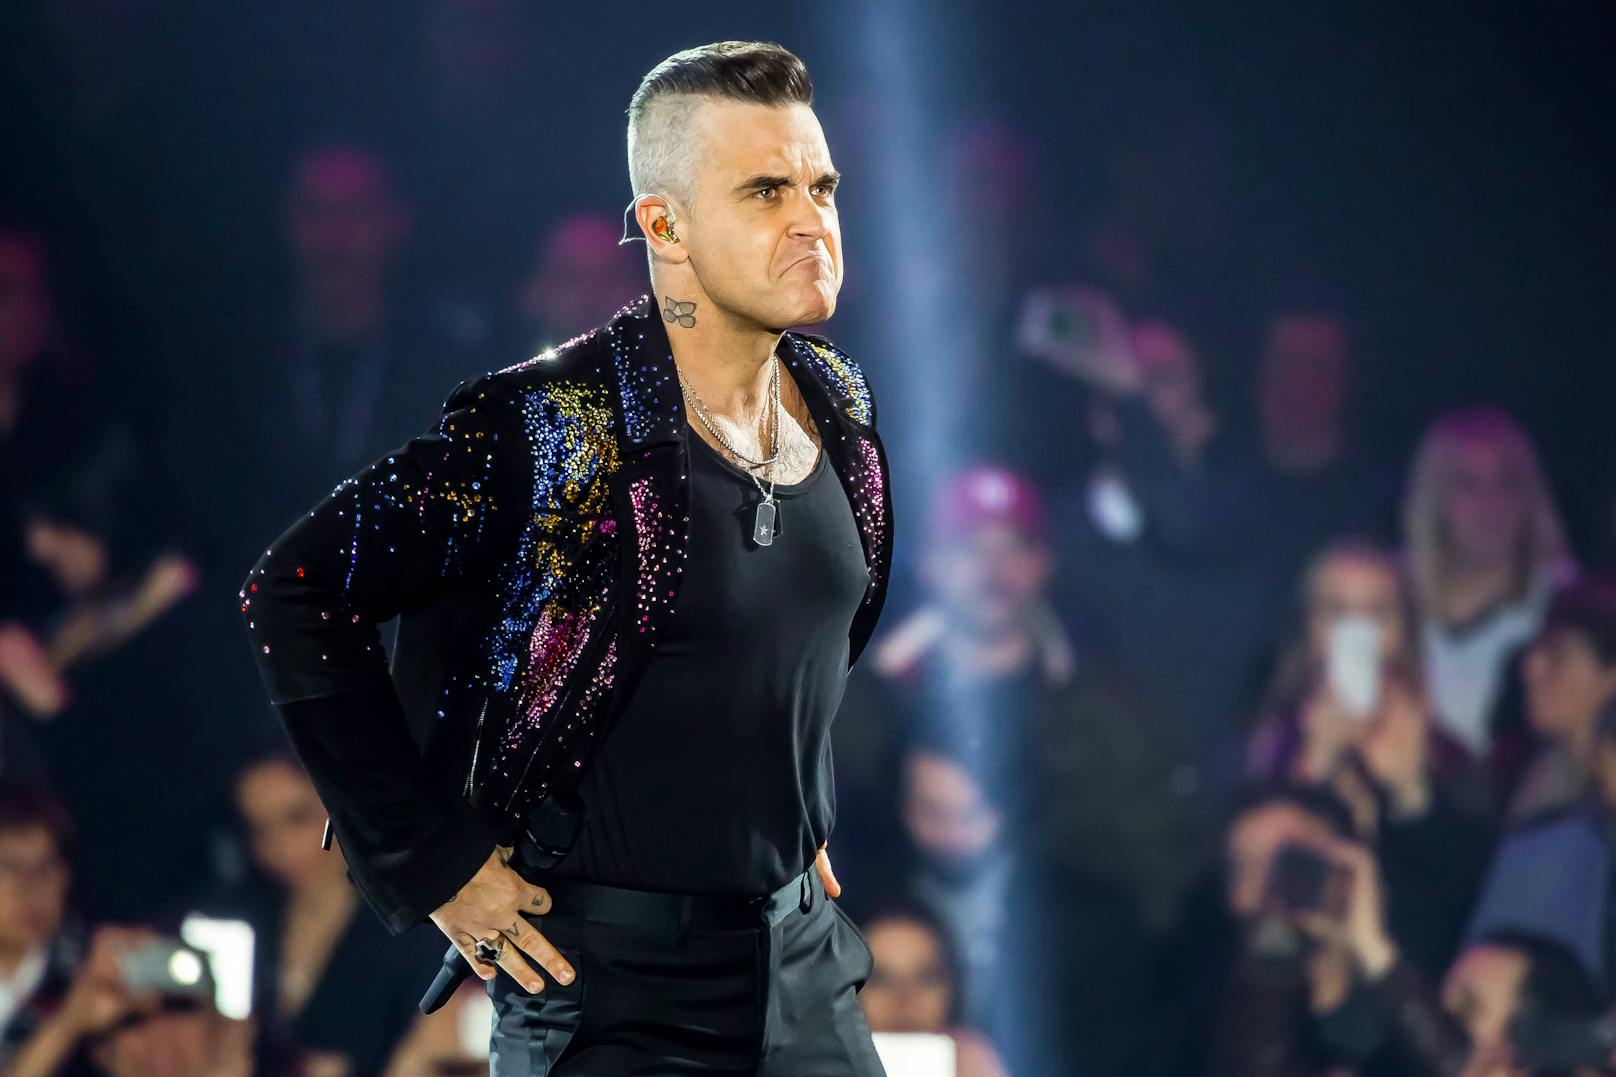 "Komplett tot": Robbie Williams hat keinen Sex mehr